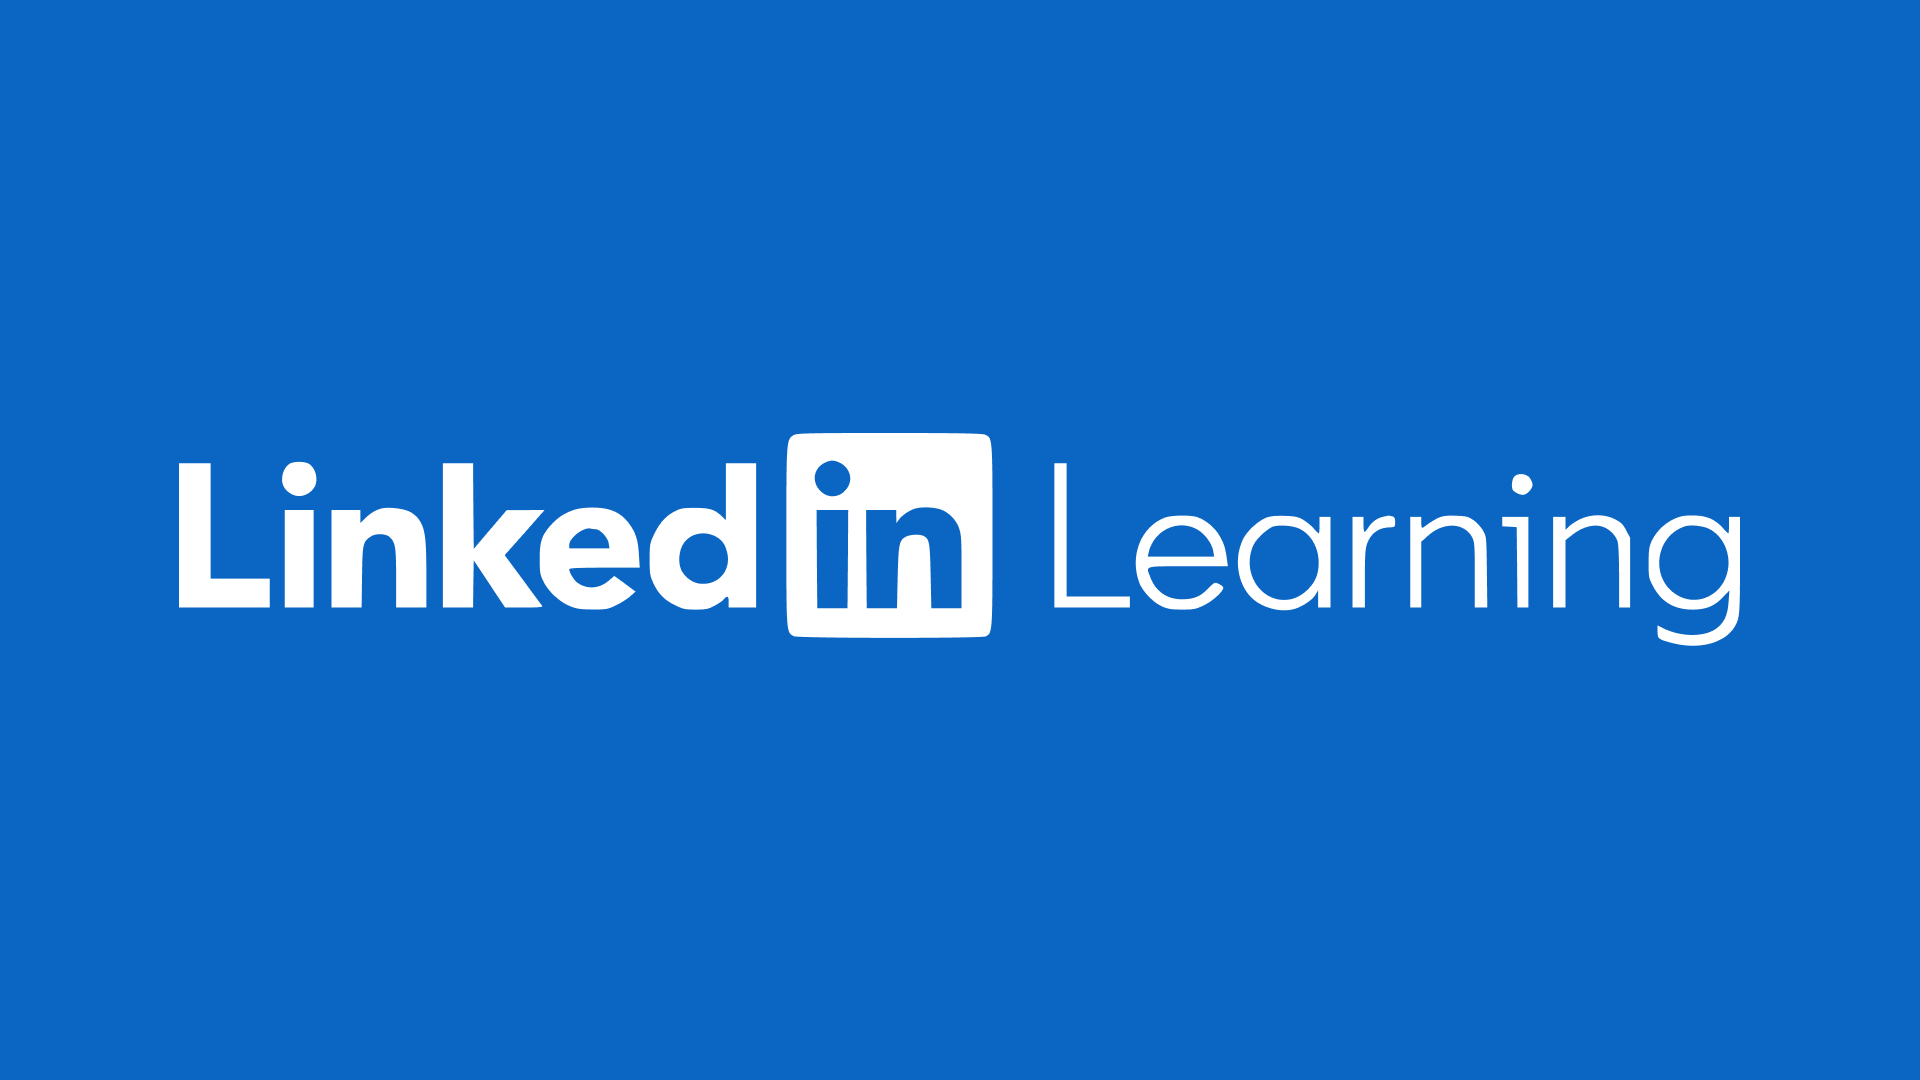 LinkedIn Learning's logo